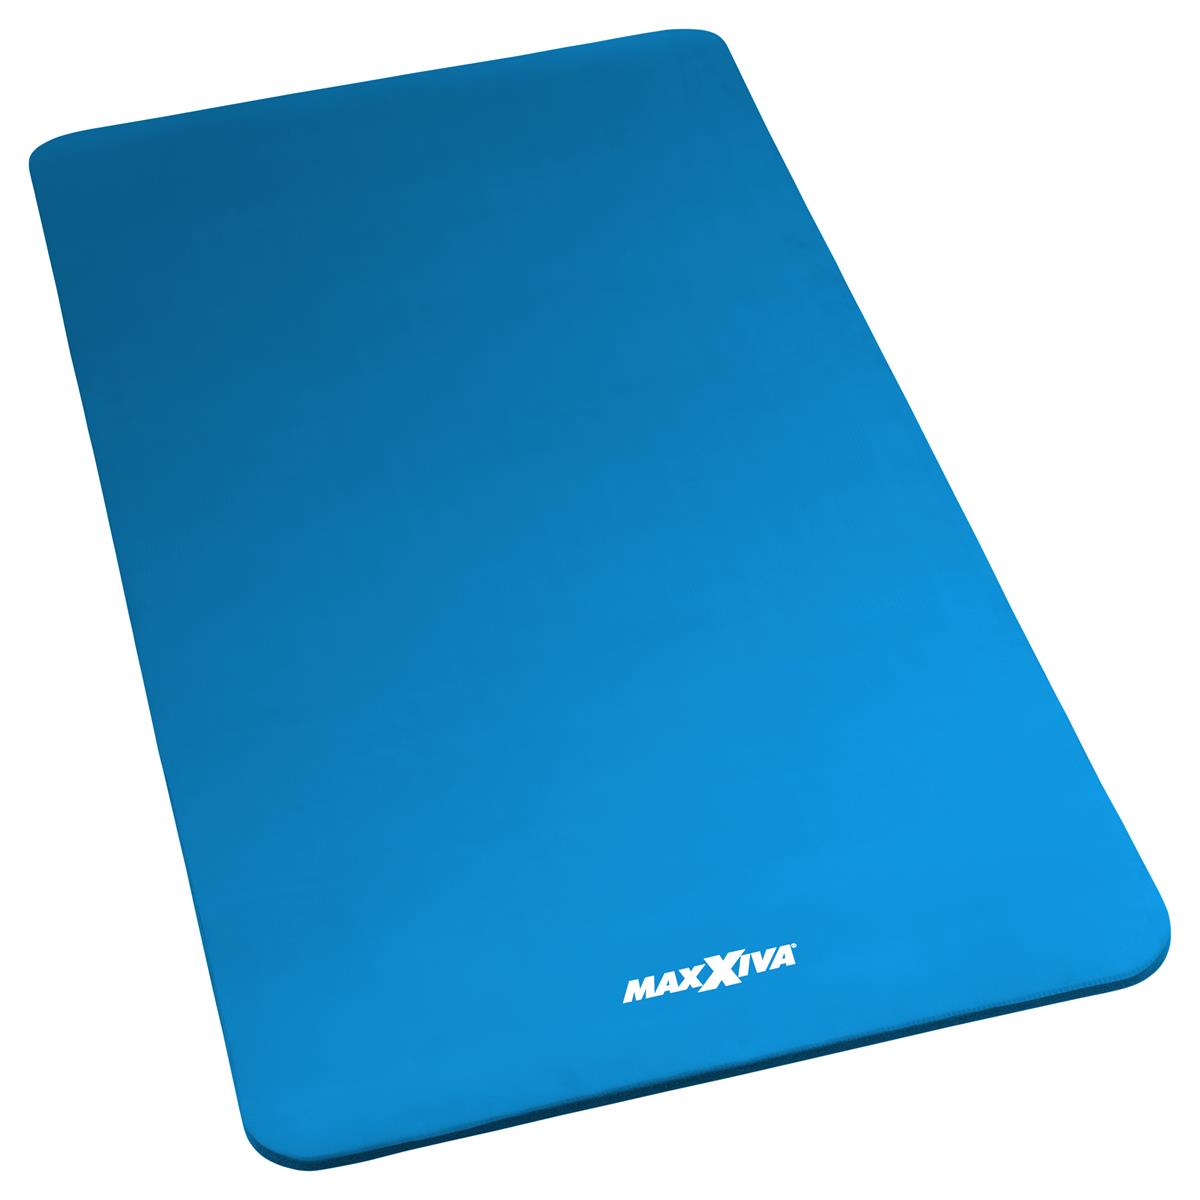 MAXXIVA Yogamatte Gymnastikmatte Fitnessmatte 190x100x1,5 cm blau schadstofffrei